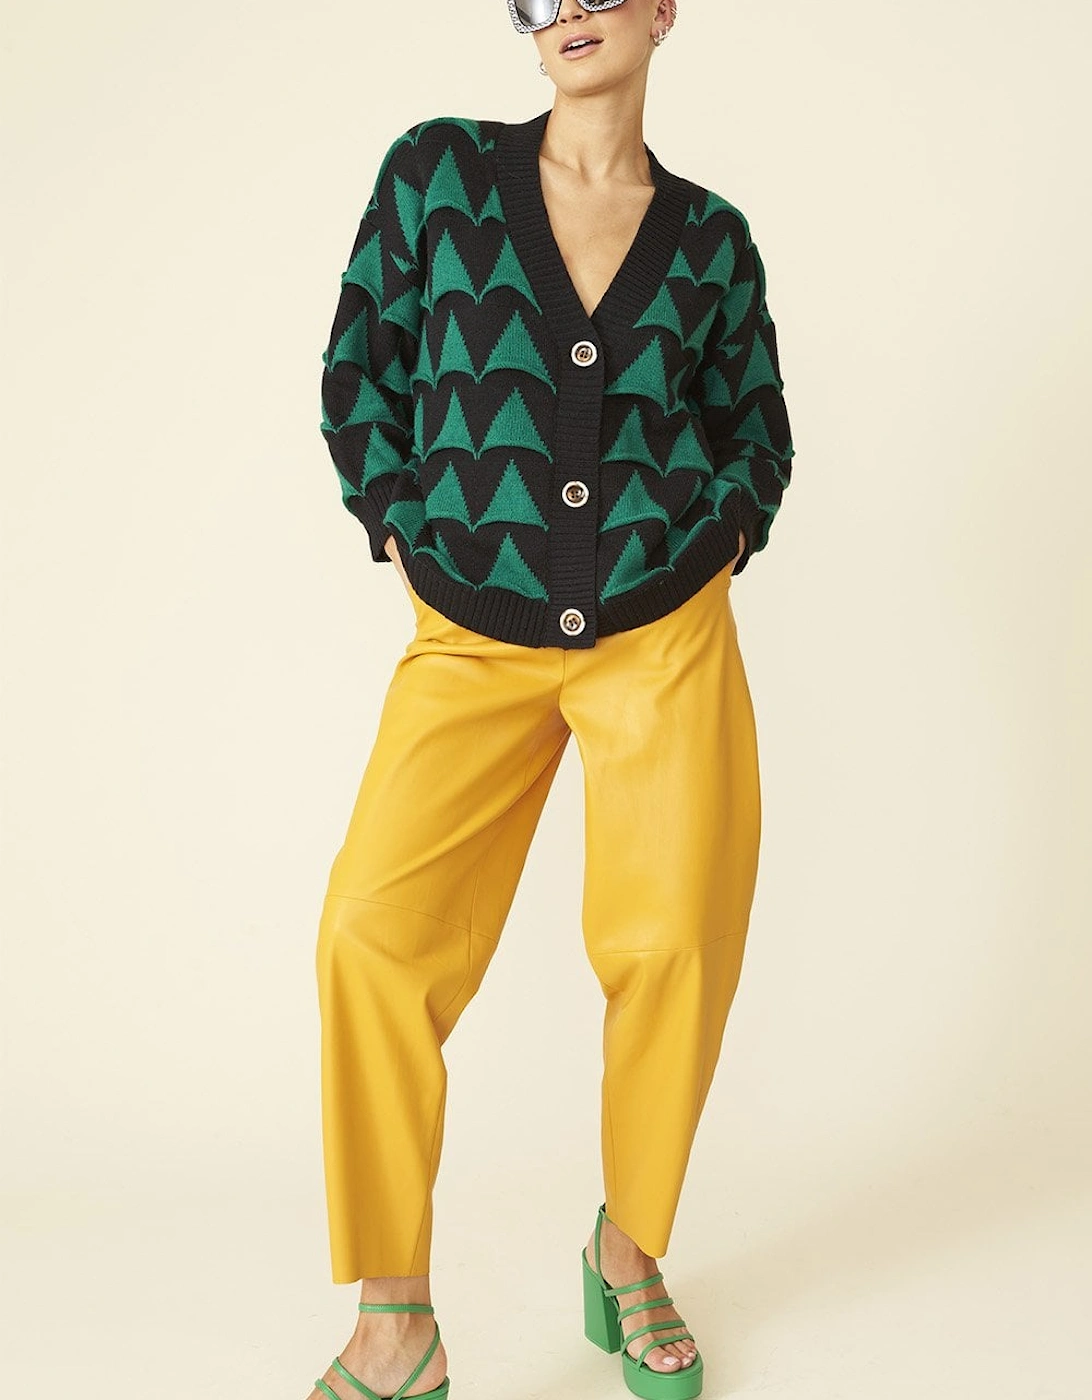 Banana Peel Geometric Cardigan with Green Faux Fur Collar